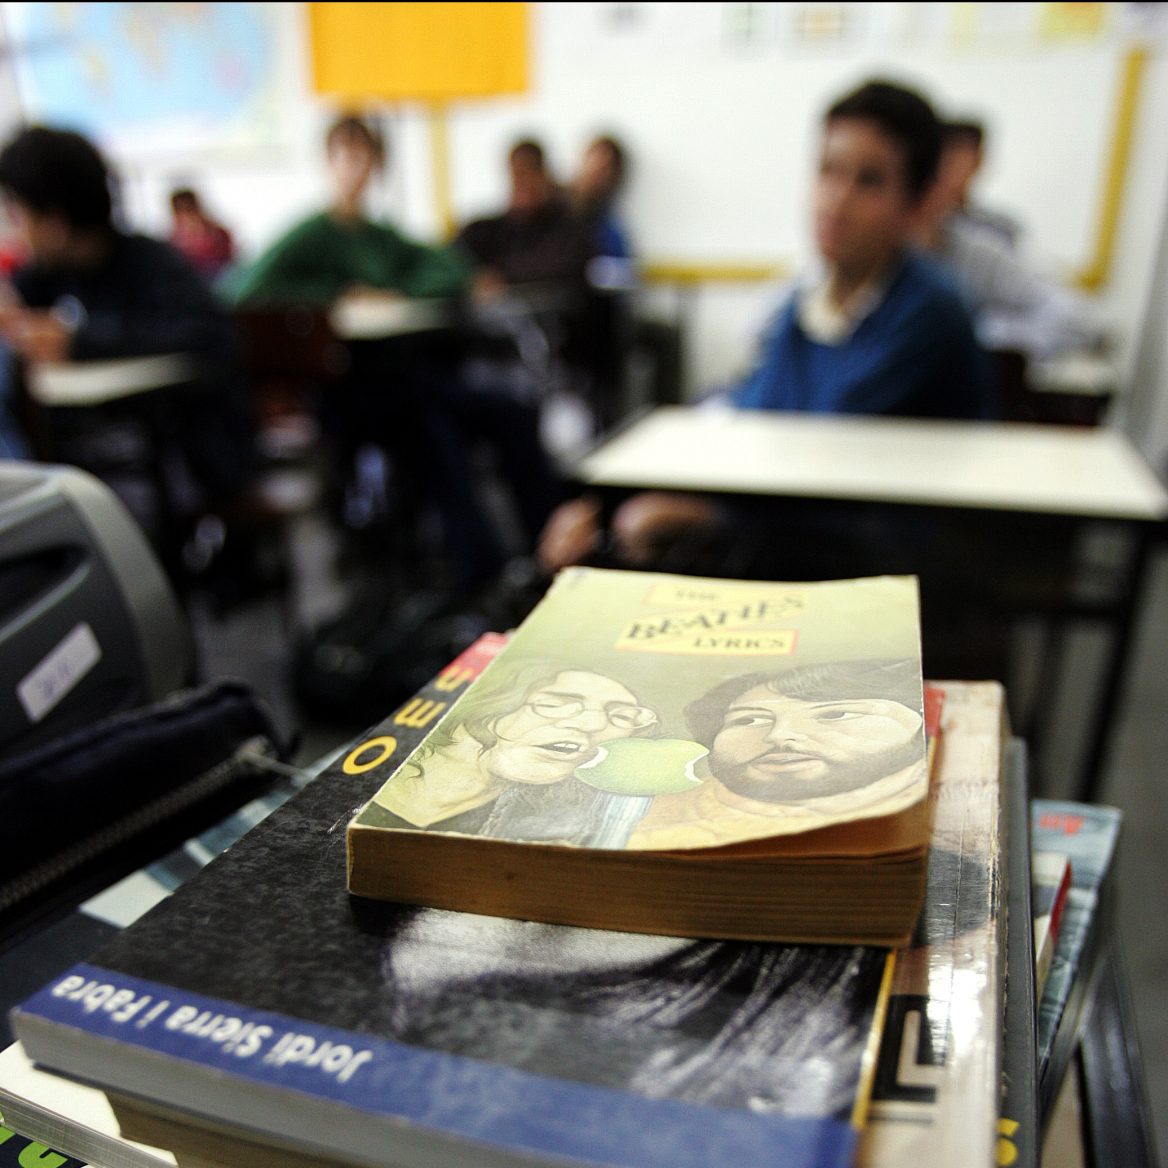 O foco da imagem são livros em cima de uma mesa. Ao fundo, estudantes sentados em carteiras de sala de aula.